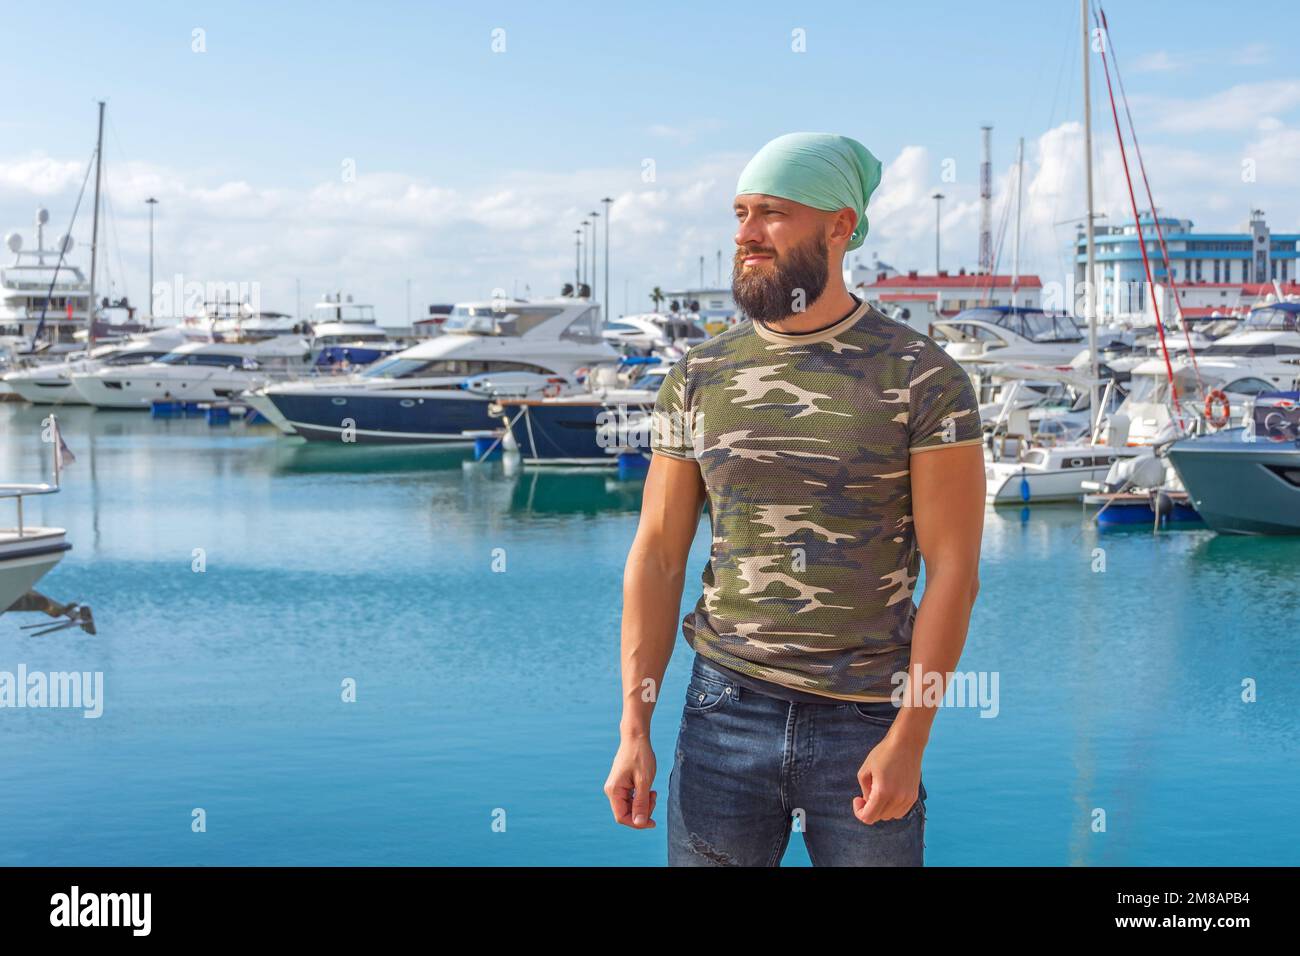 Hermosas camisetas militares bandanna turquesa barba masculina se coloca en el muelle contra el telón de fondo de yates en la bahía del puerto en clima soleado Foto de stock